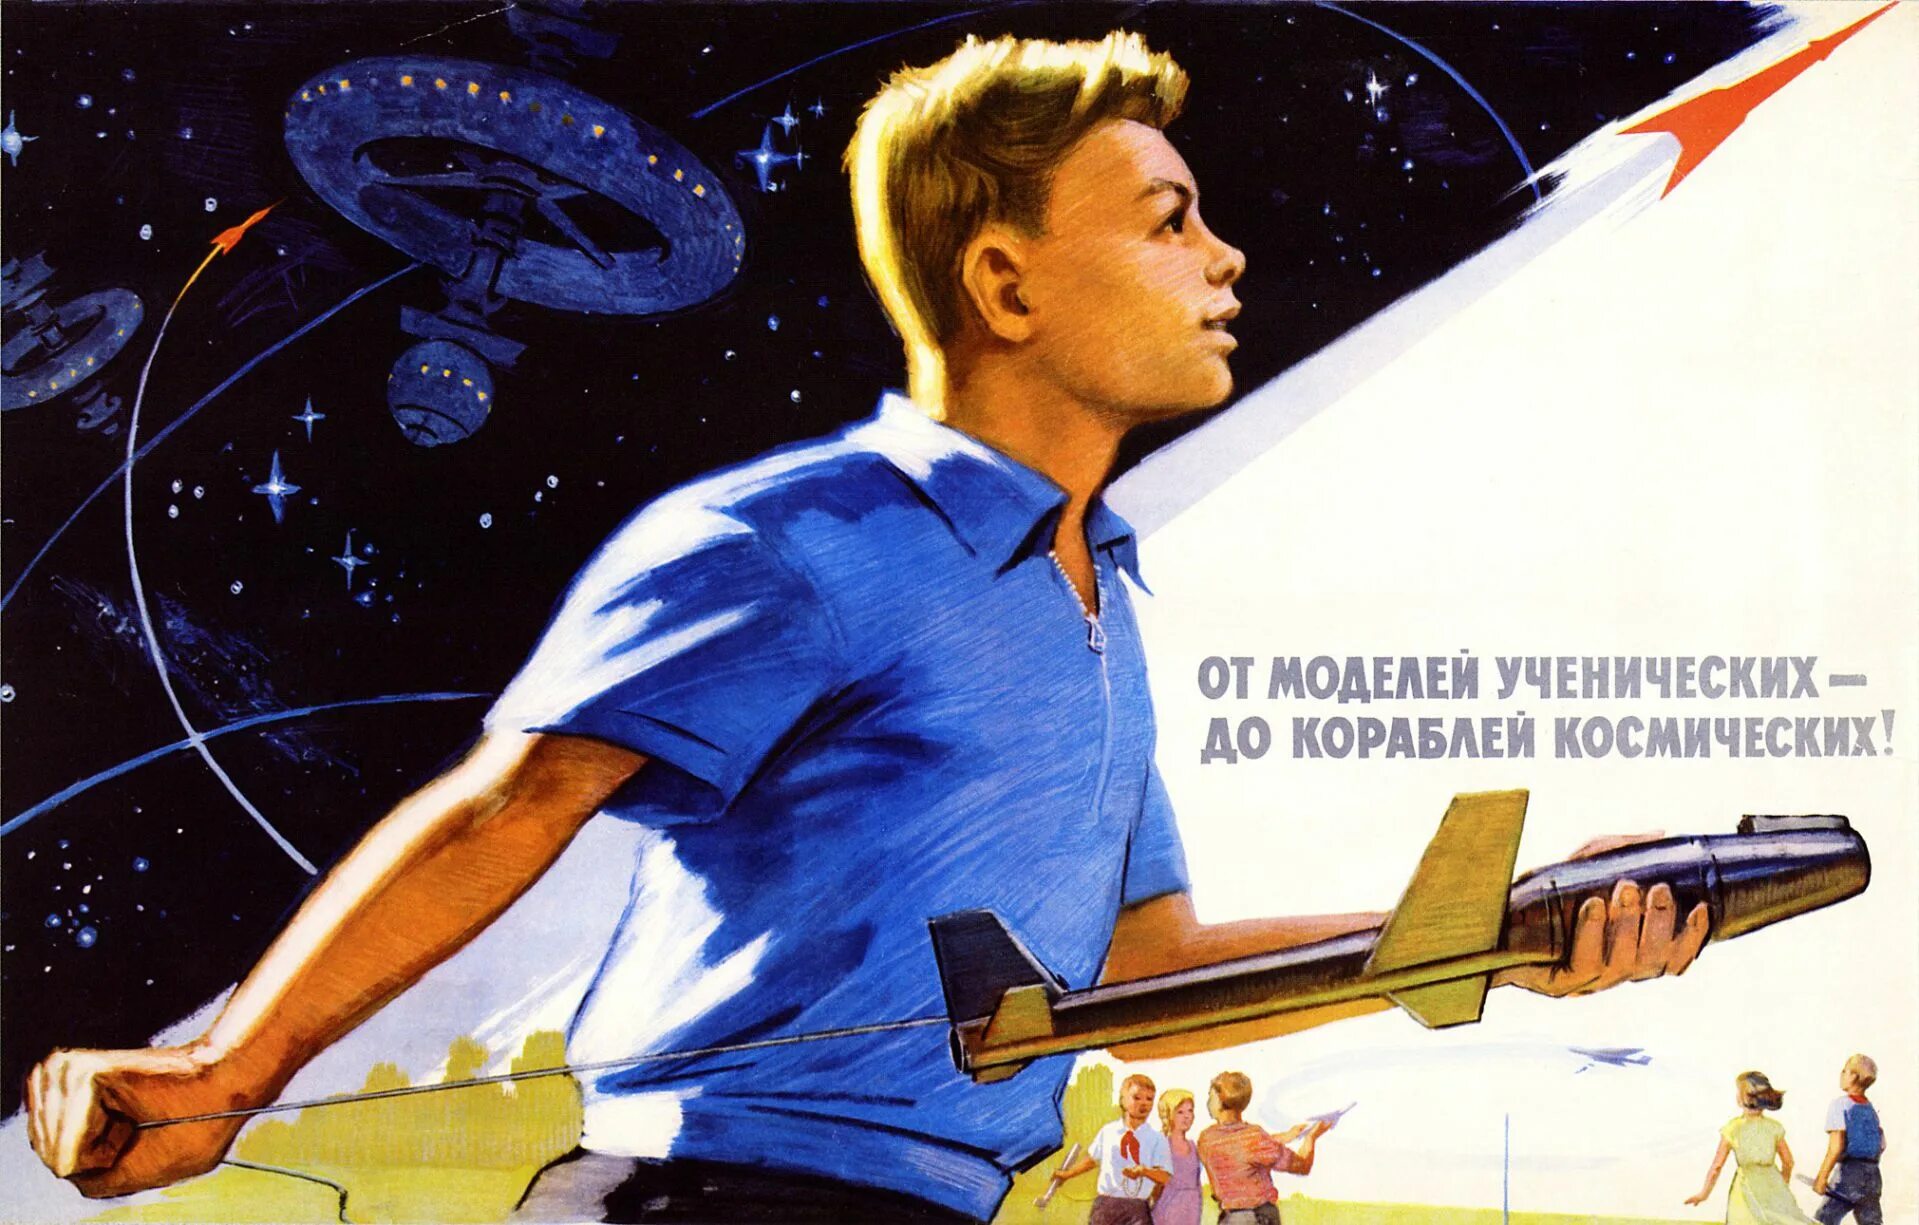 Советские плакаты. Советские плакаты про космос. Советский плакат от моделей ученических до кораблей космических. Советские лозунги о космосе. Изобретатель первых советских космических кораблей